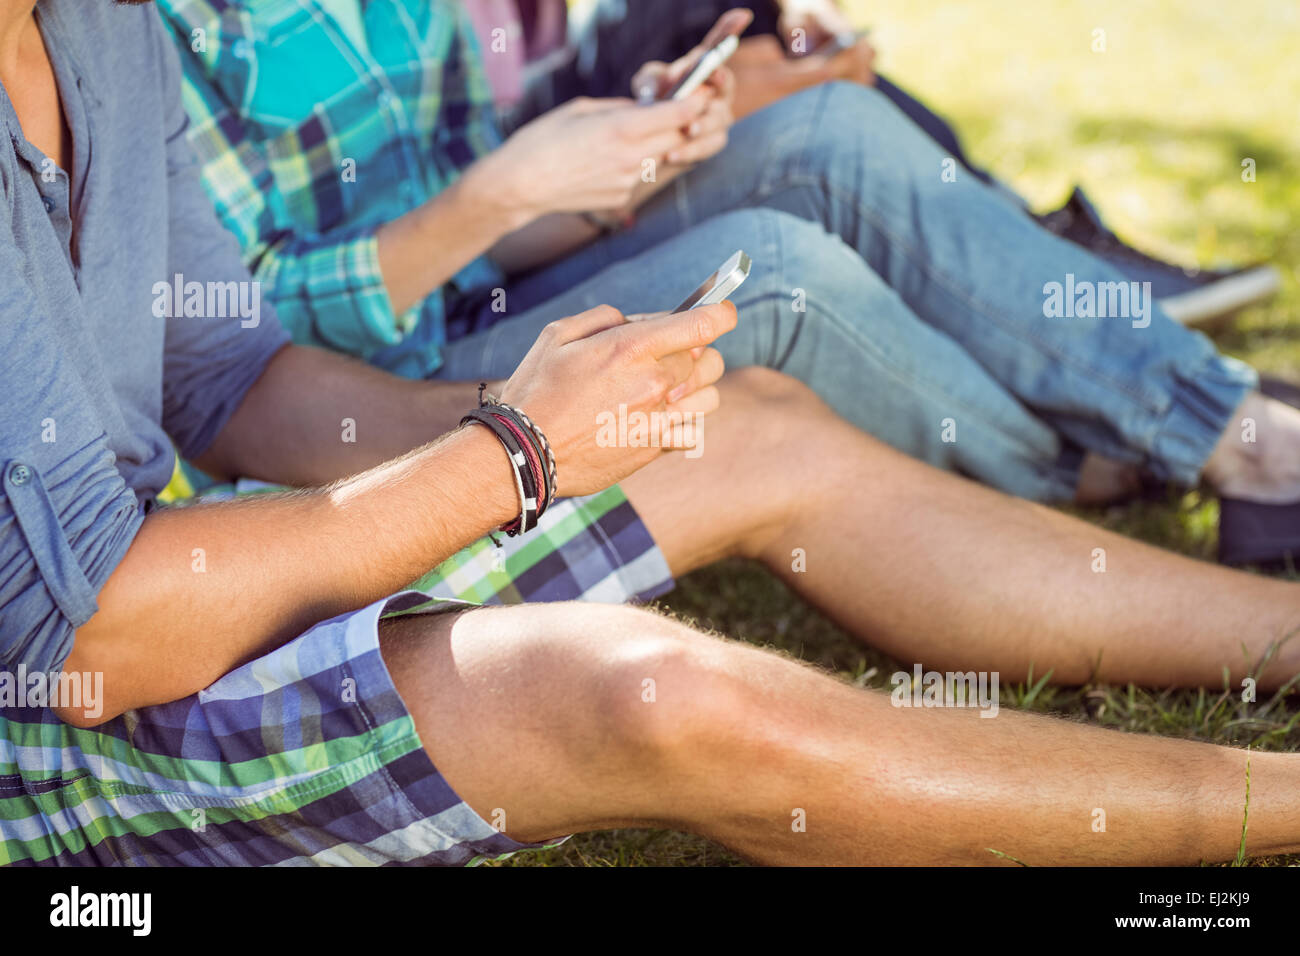 Les gens branchés assis sur l'herbe texting Banque D'Images